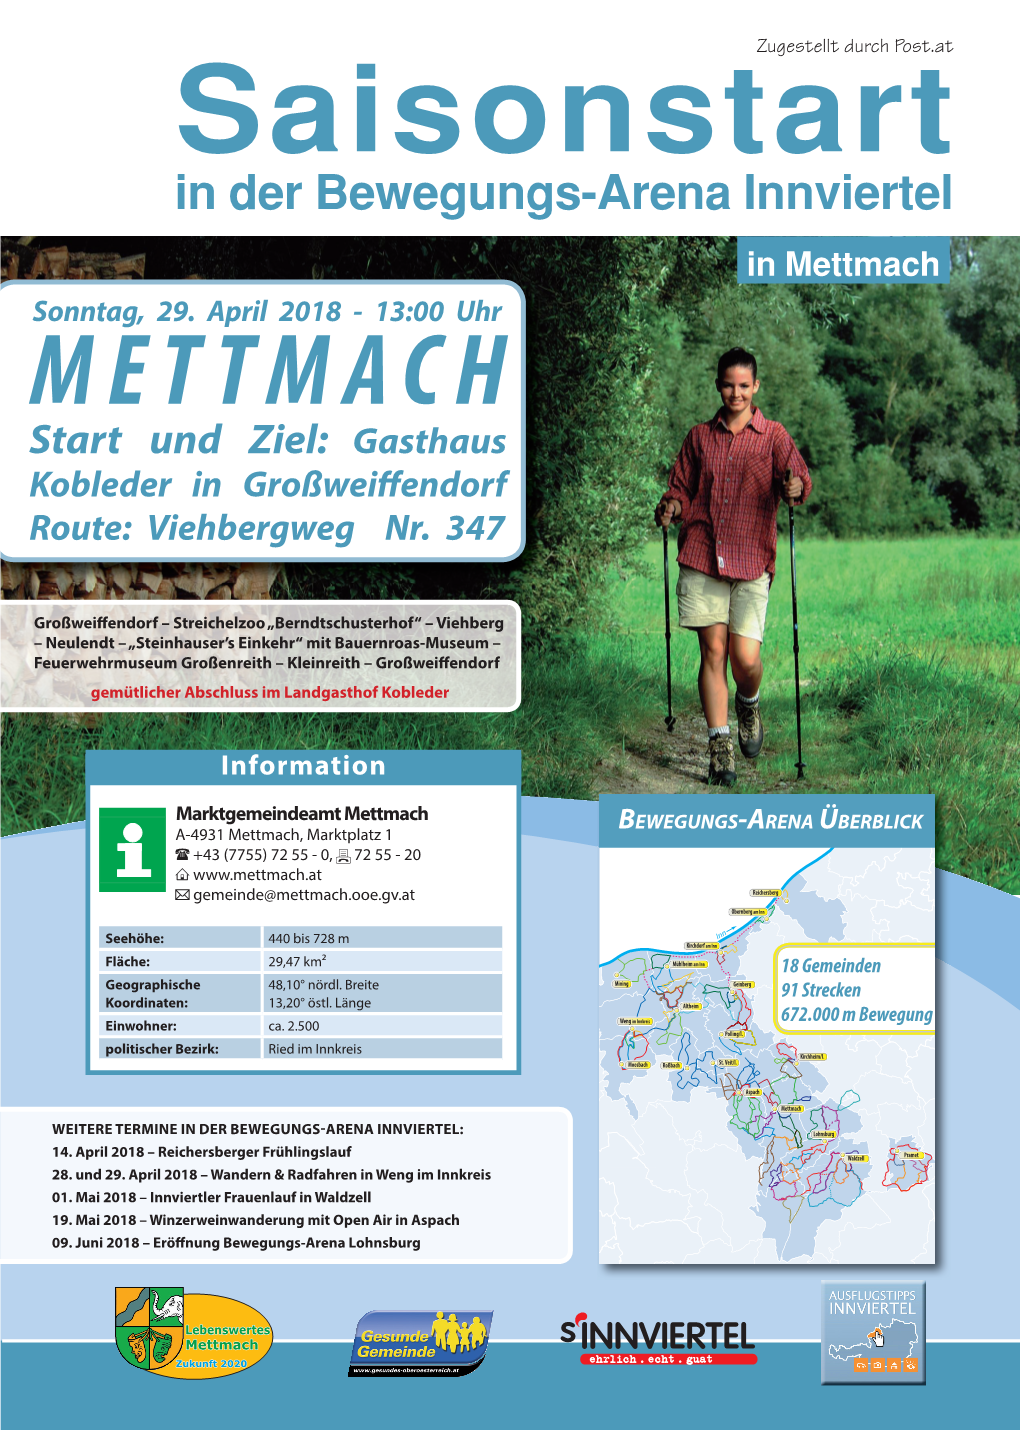 METTMACH Start Und Ziel: Gasthaus Kobleder in Großwei Endorf Route: Viehbergweg Nr